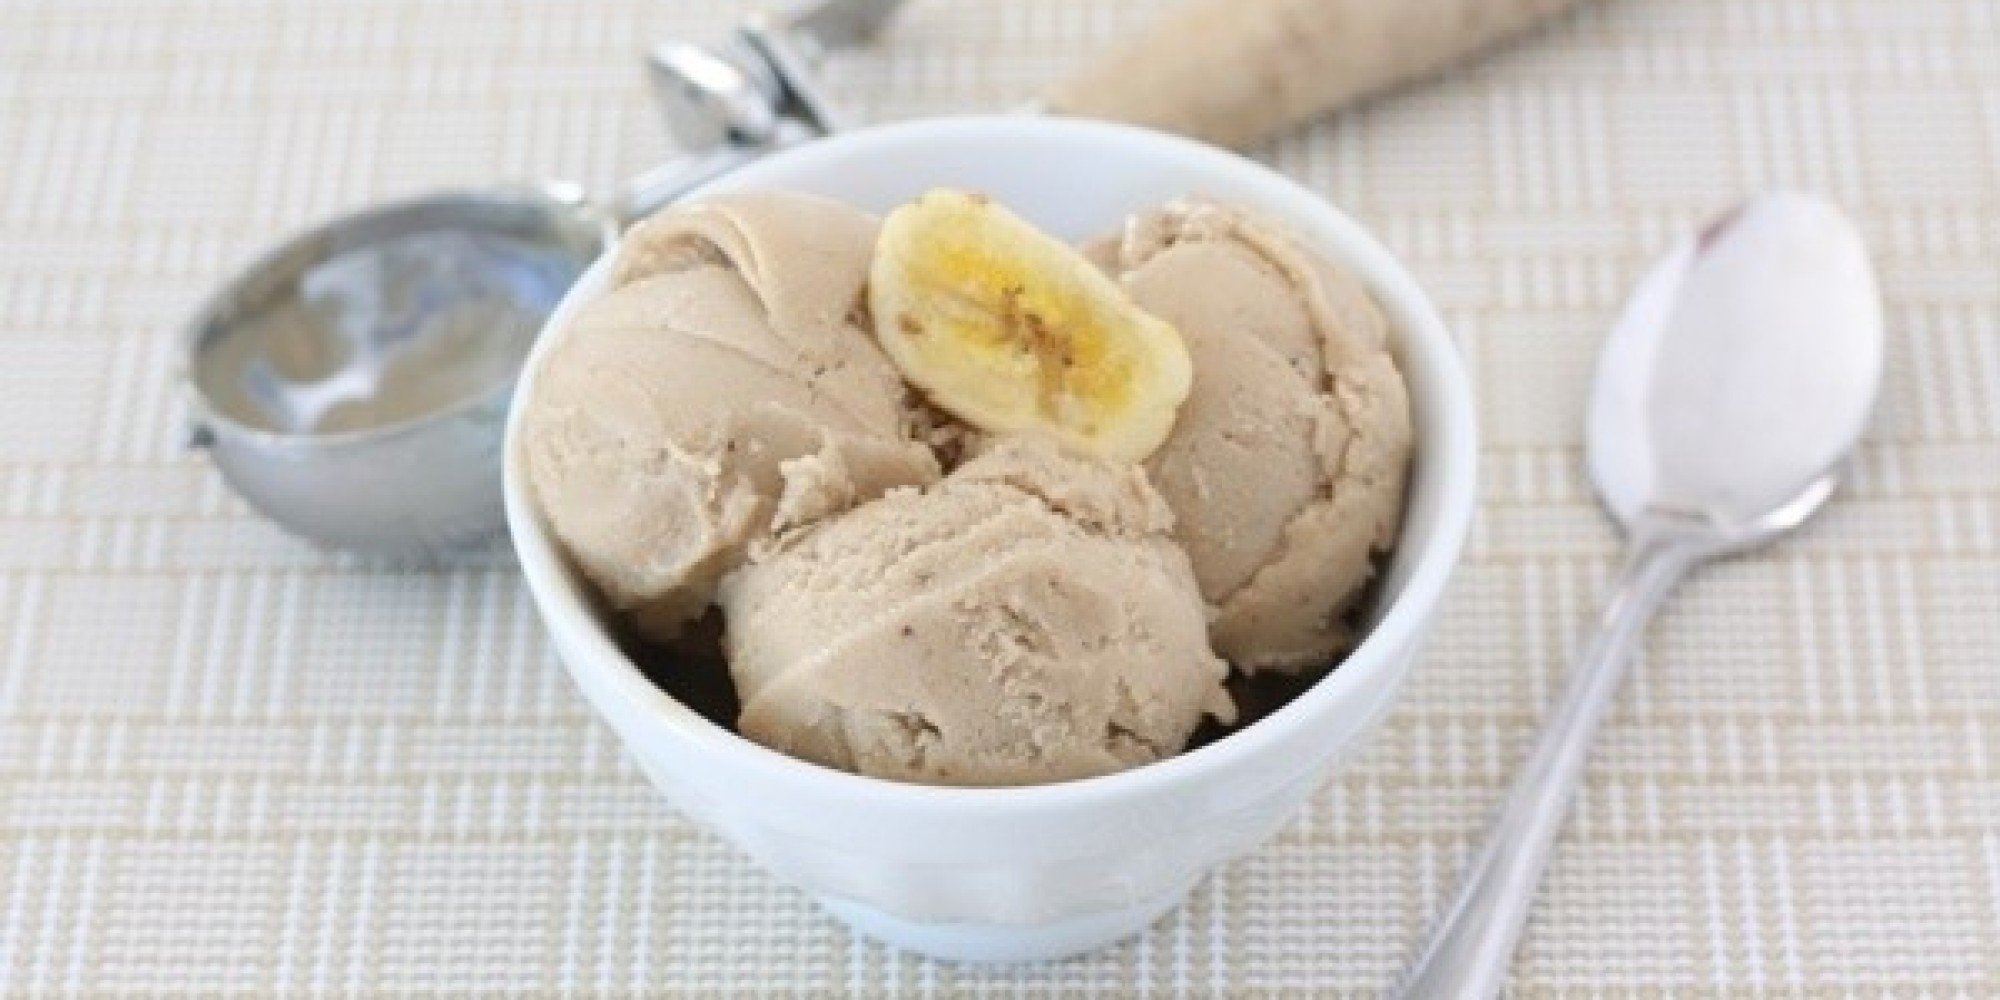 სასარგებლო და გემრიელი ნაყინის მარტივი რეცეპტი